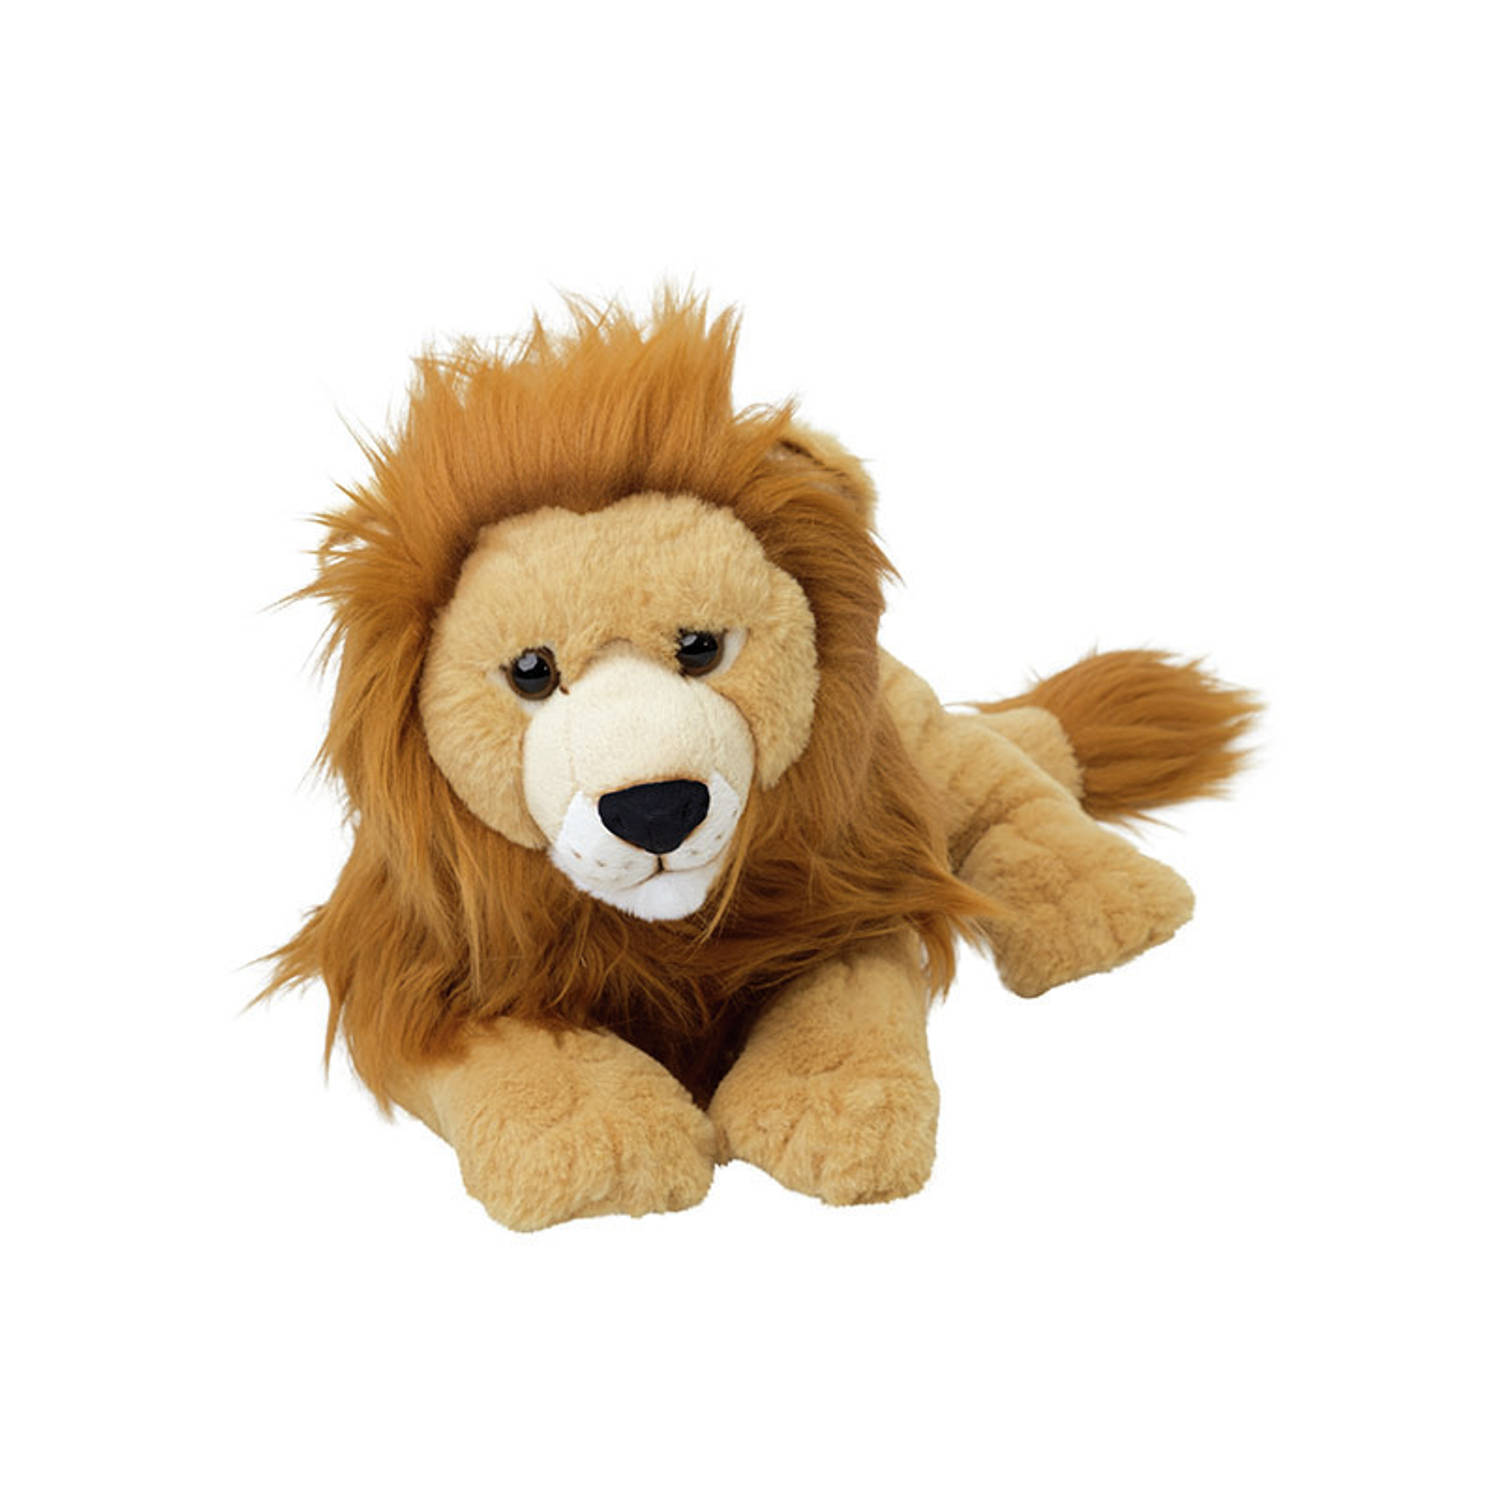 Pluche Leeuw knuffeldier van 48 cm - Speelgoed dieren knuffels cadeau voor kinderen - Leeuwen